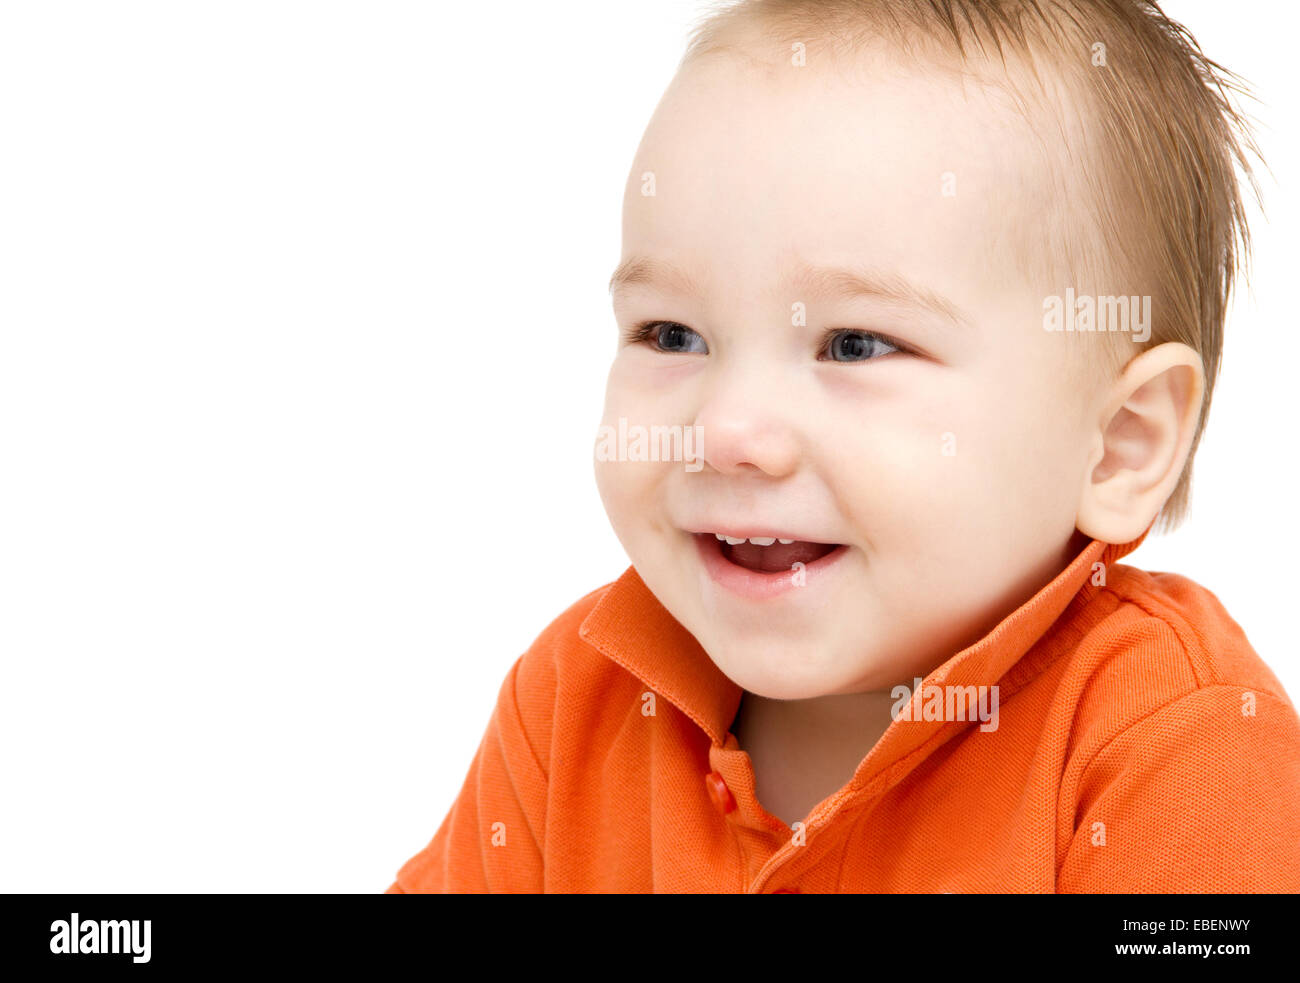 Happy baby boy face Stock Photo